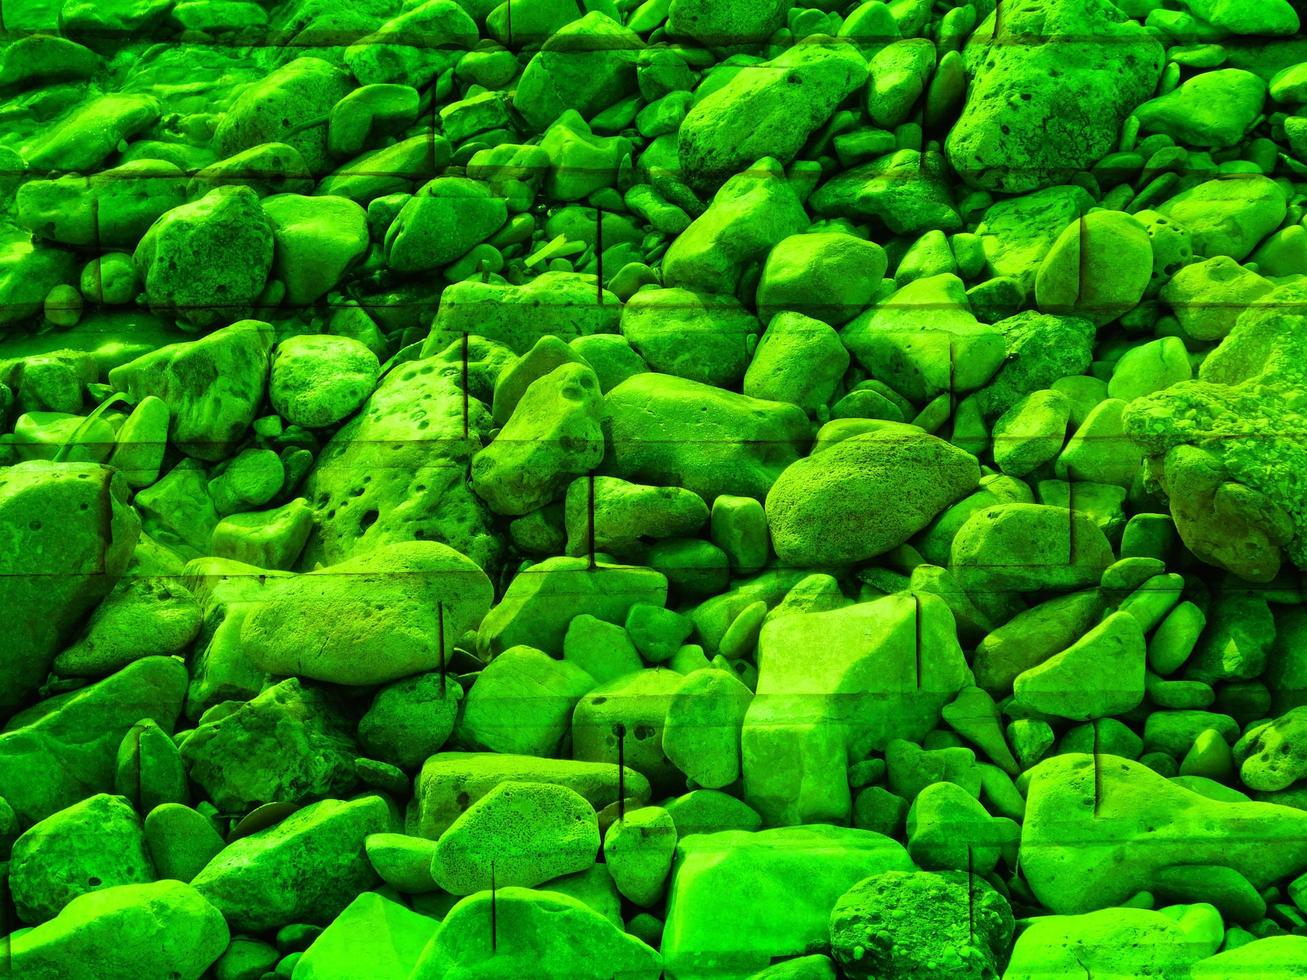 trama di pietra verde foto